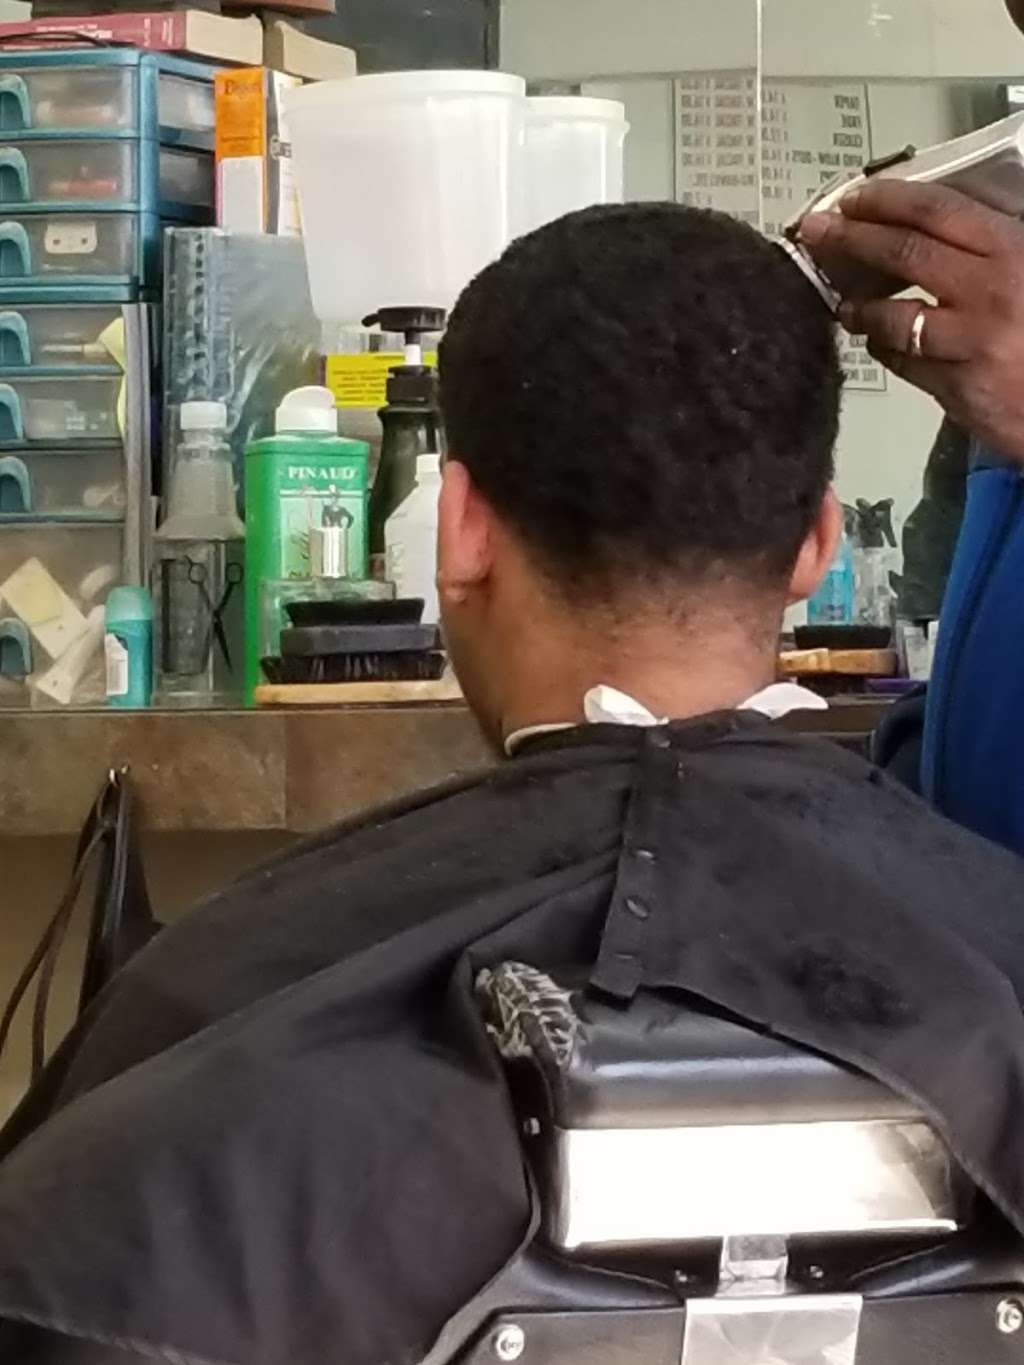 the ville barber shop